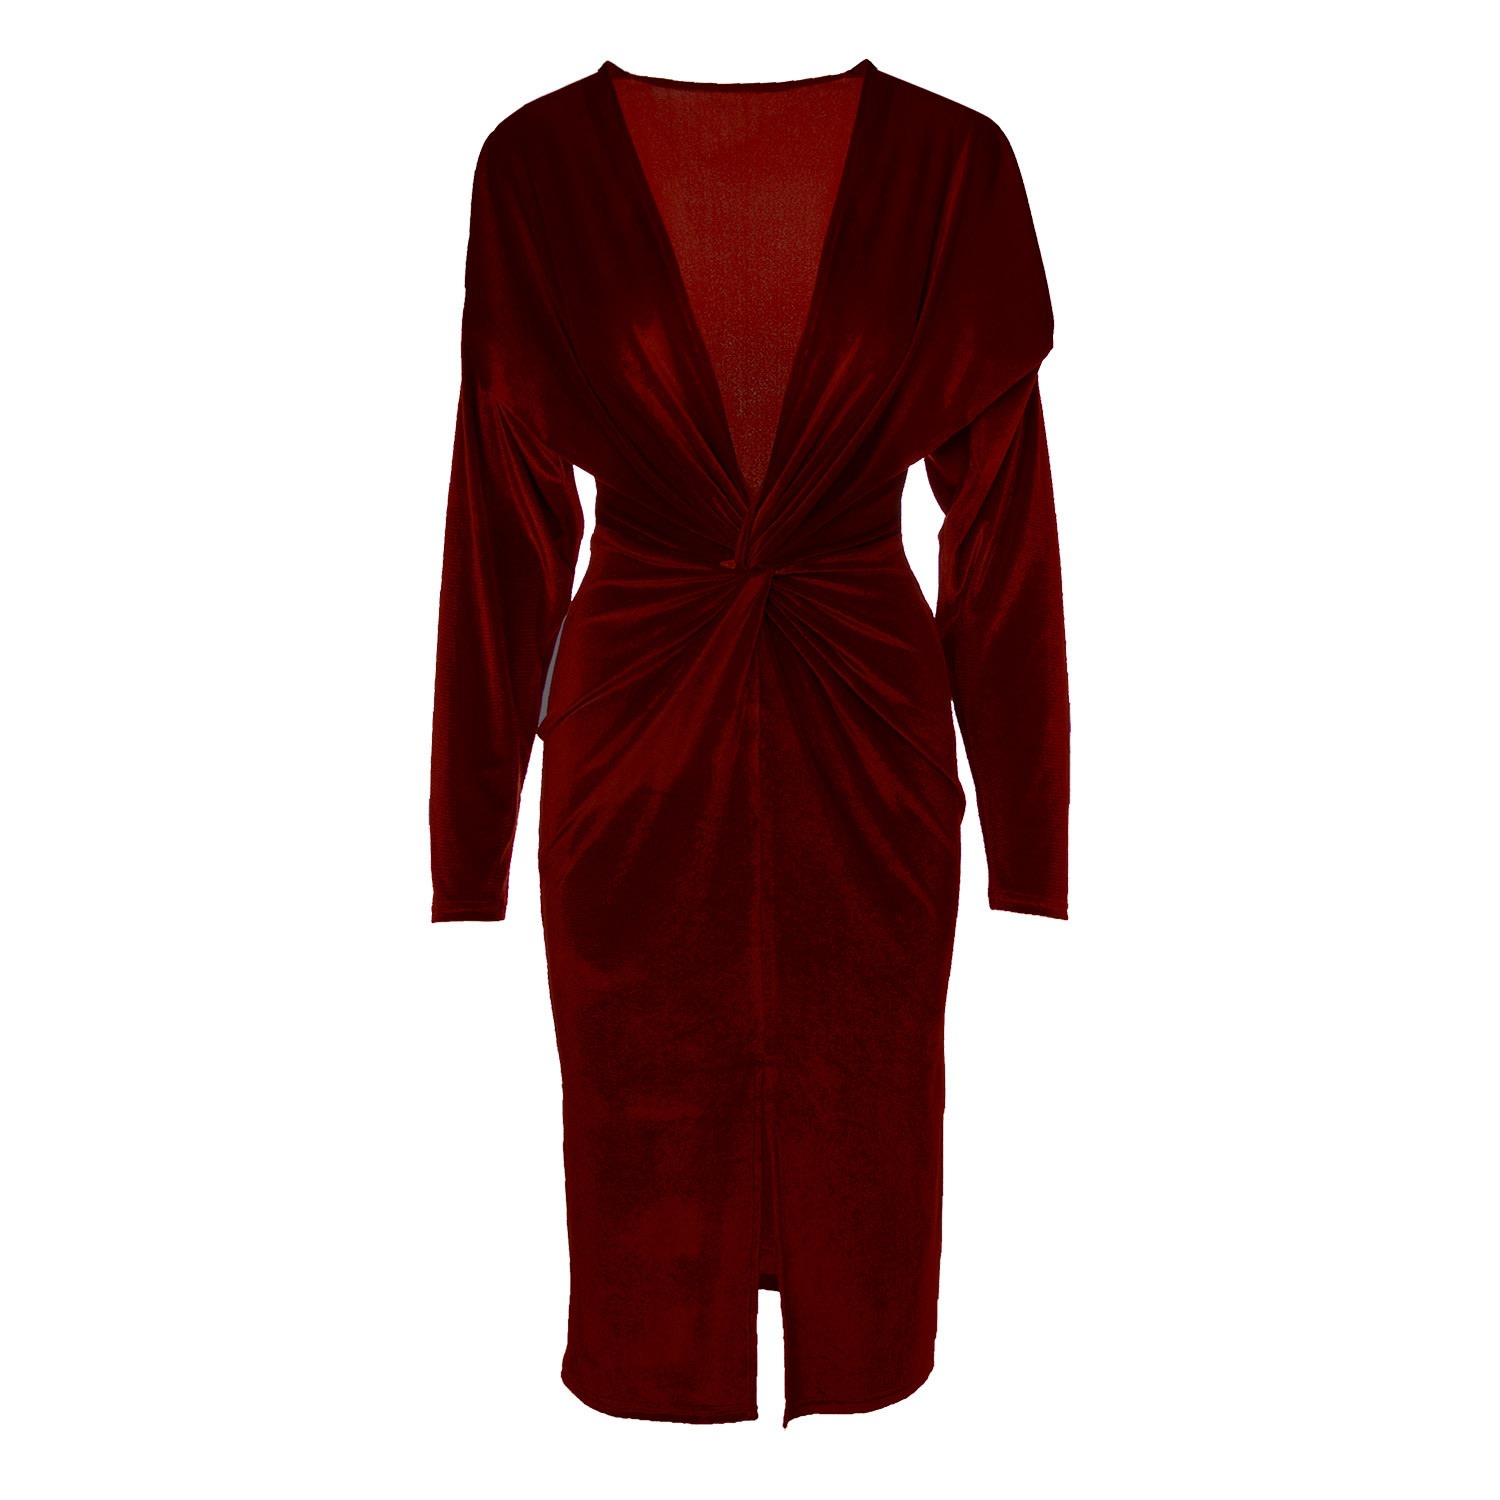 Women’s Red Burgundy Velvet Dress With Knot Medium Bluzat